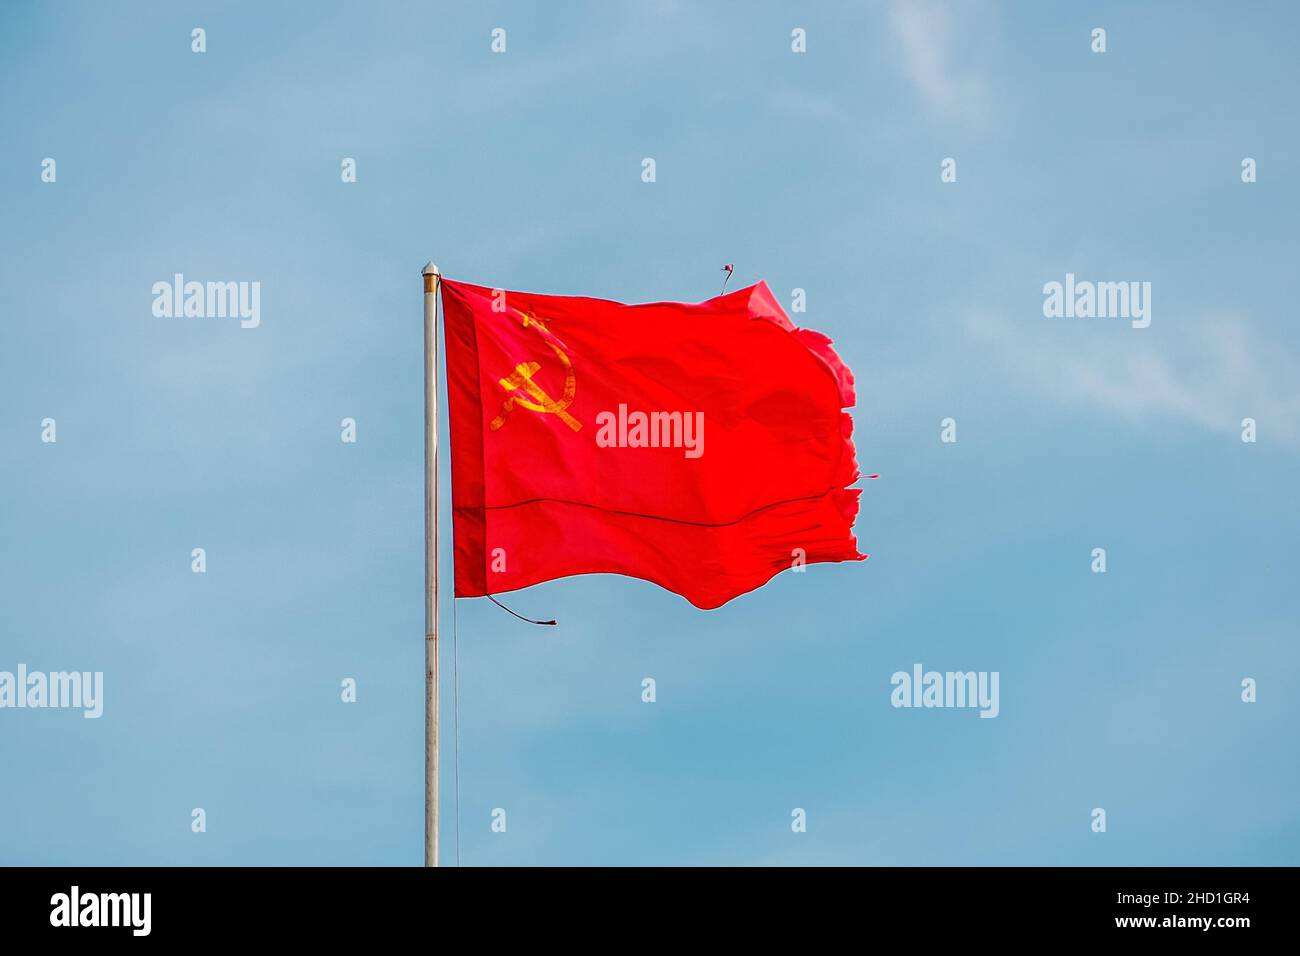 La bannière rouge de la victoire pendant la Seconde Guerre mondiale se développe dans le vent contre un ciel clair Banque D'Images